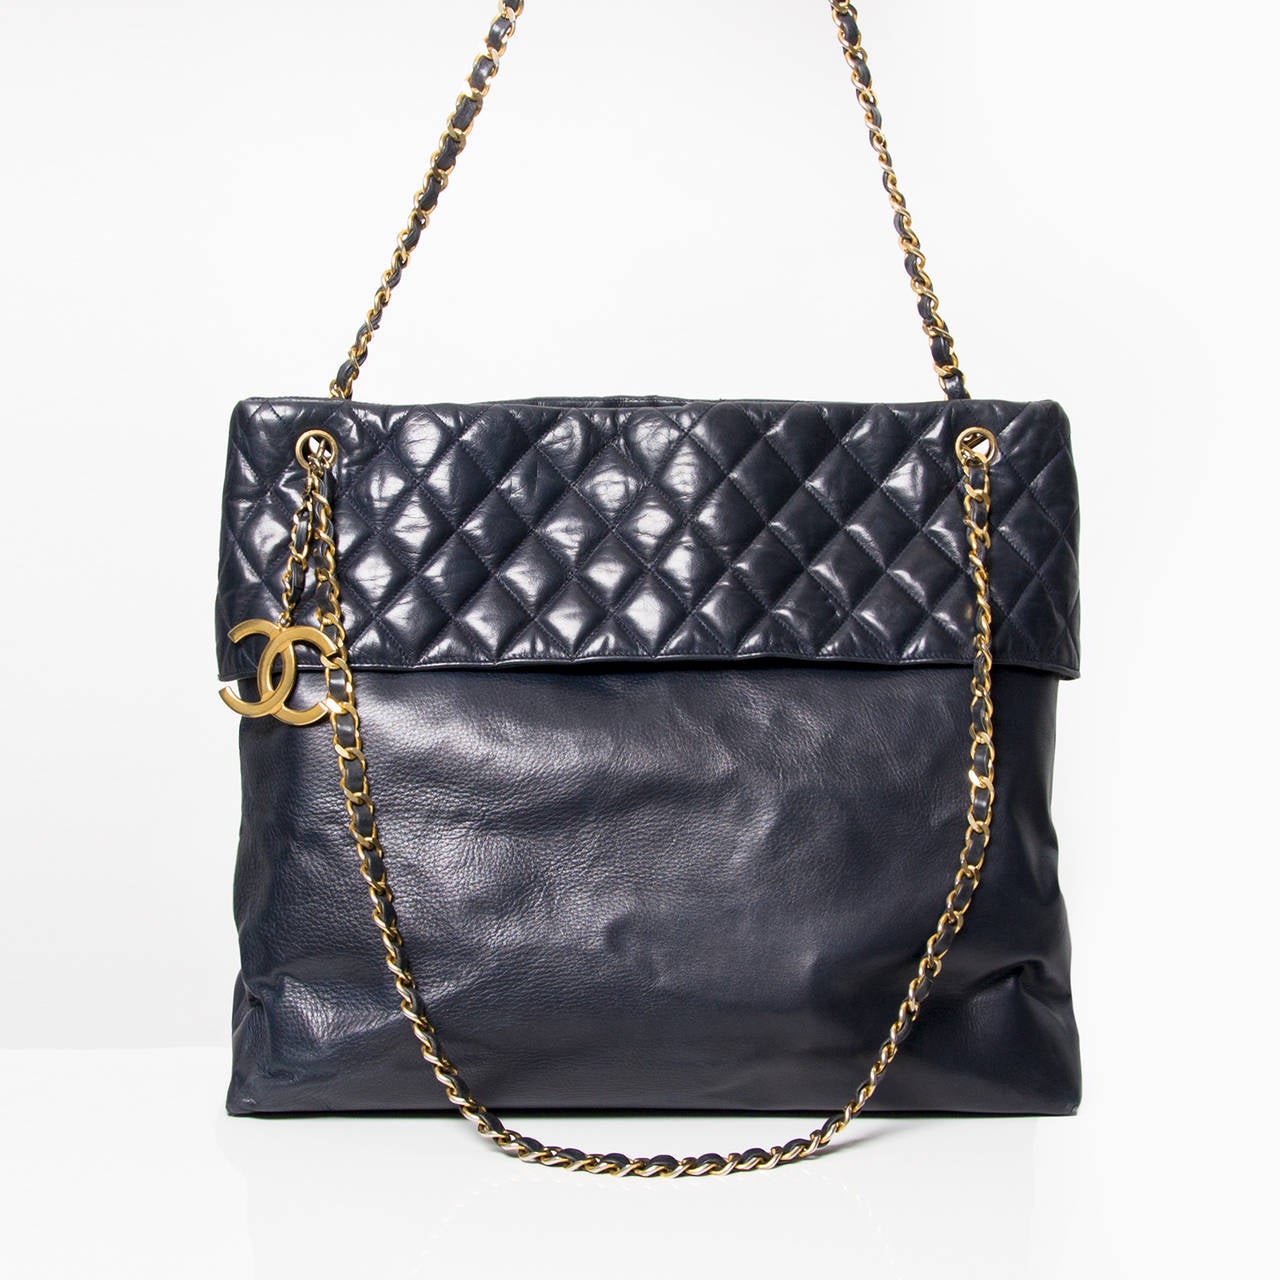 Chanel vintage dark blue Tote bag with golden hardware. 
Magnetic closure. 
One inside zipper pocket.